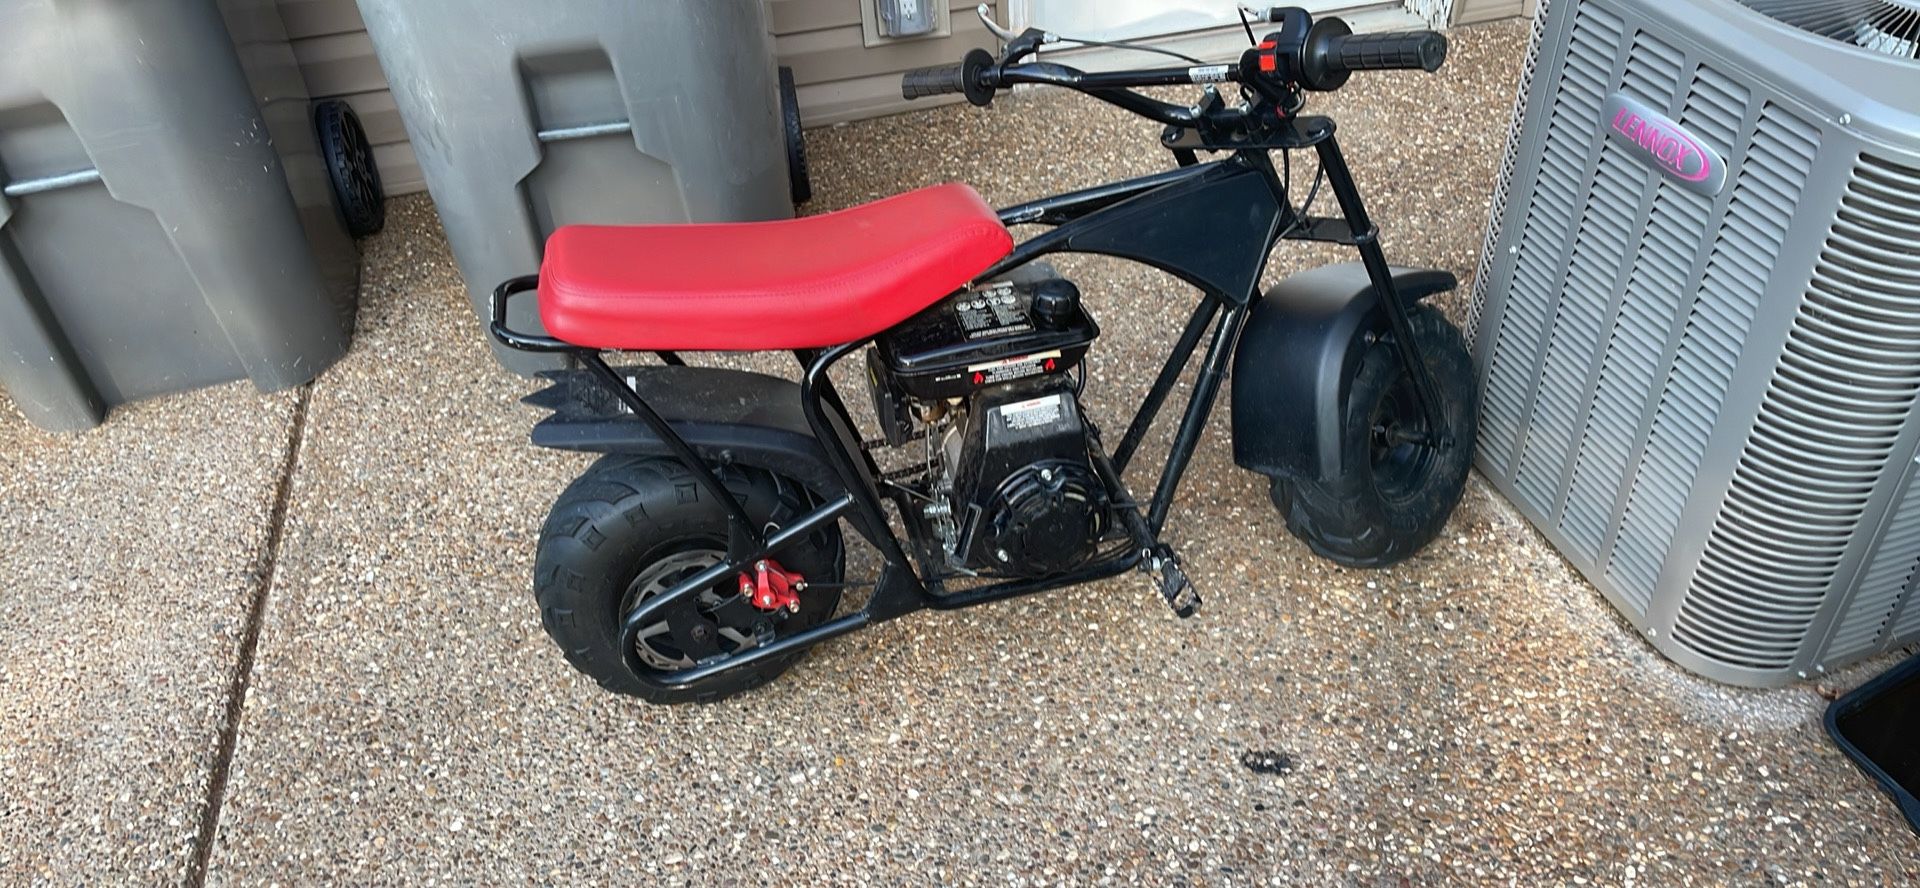 2020 monster moto 125cc